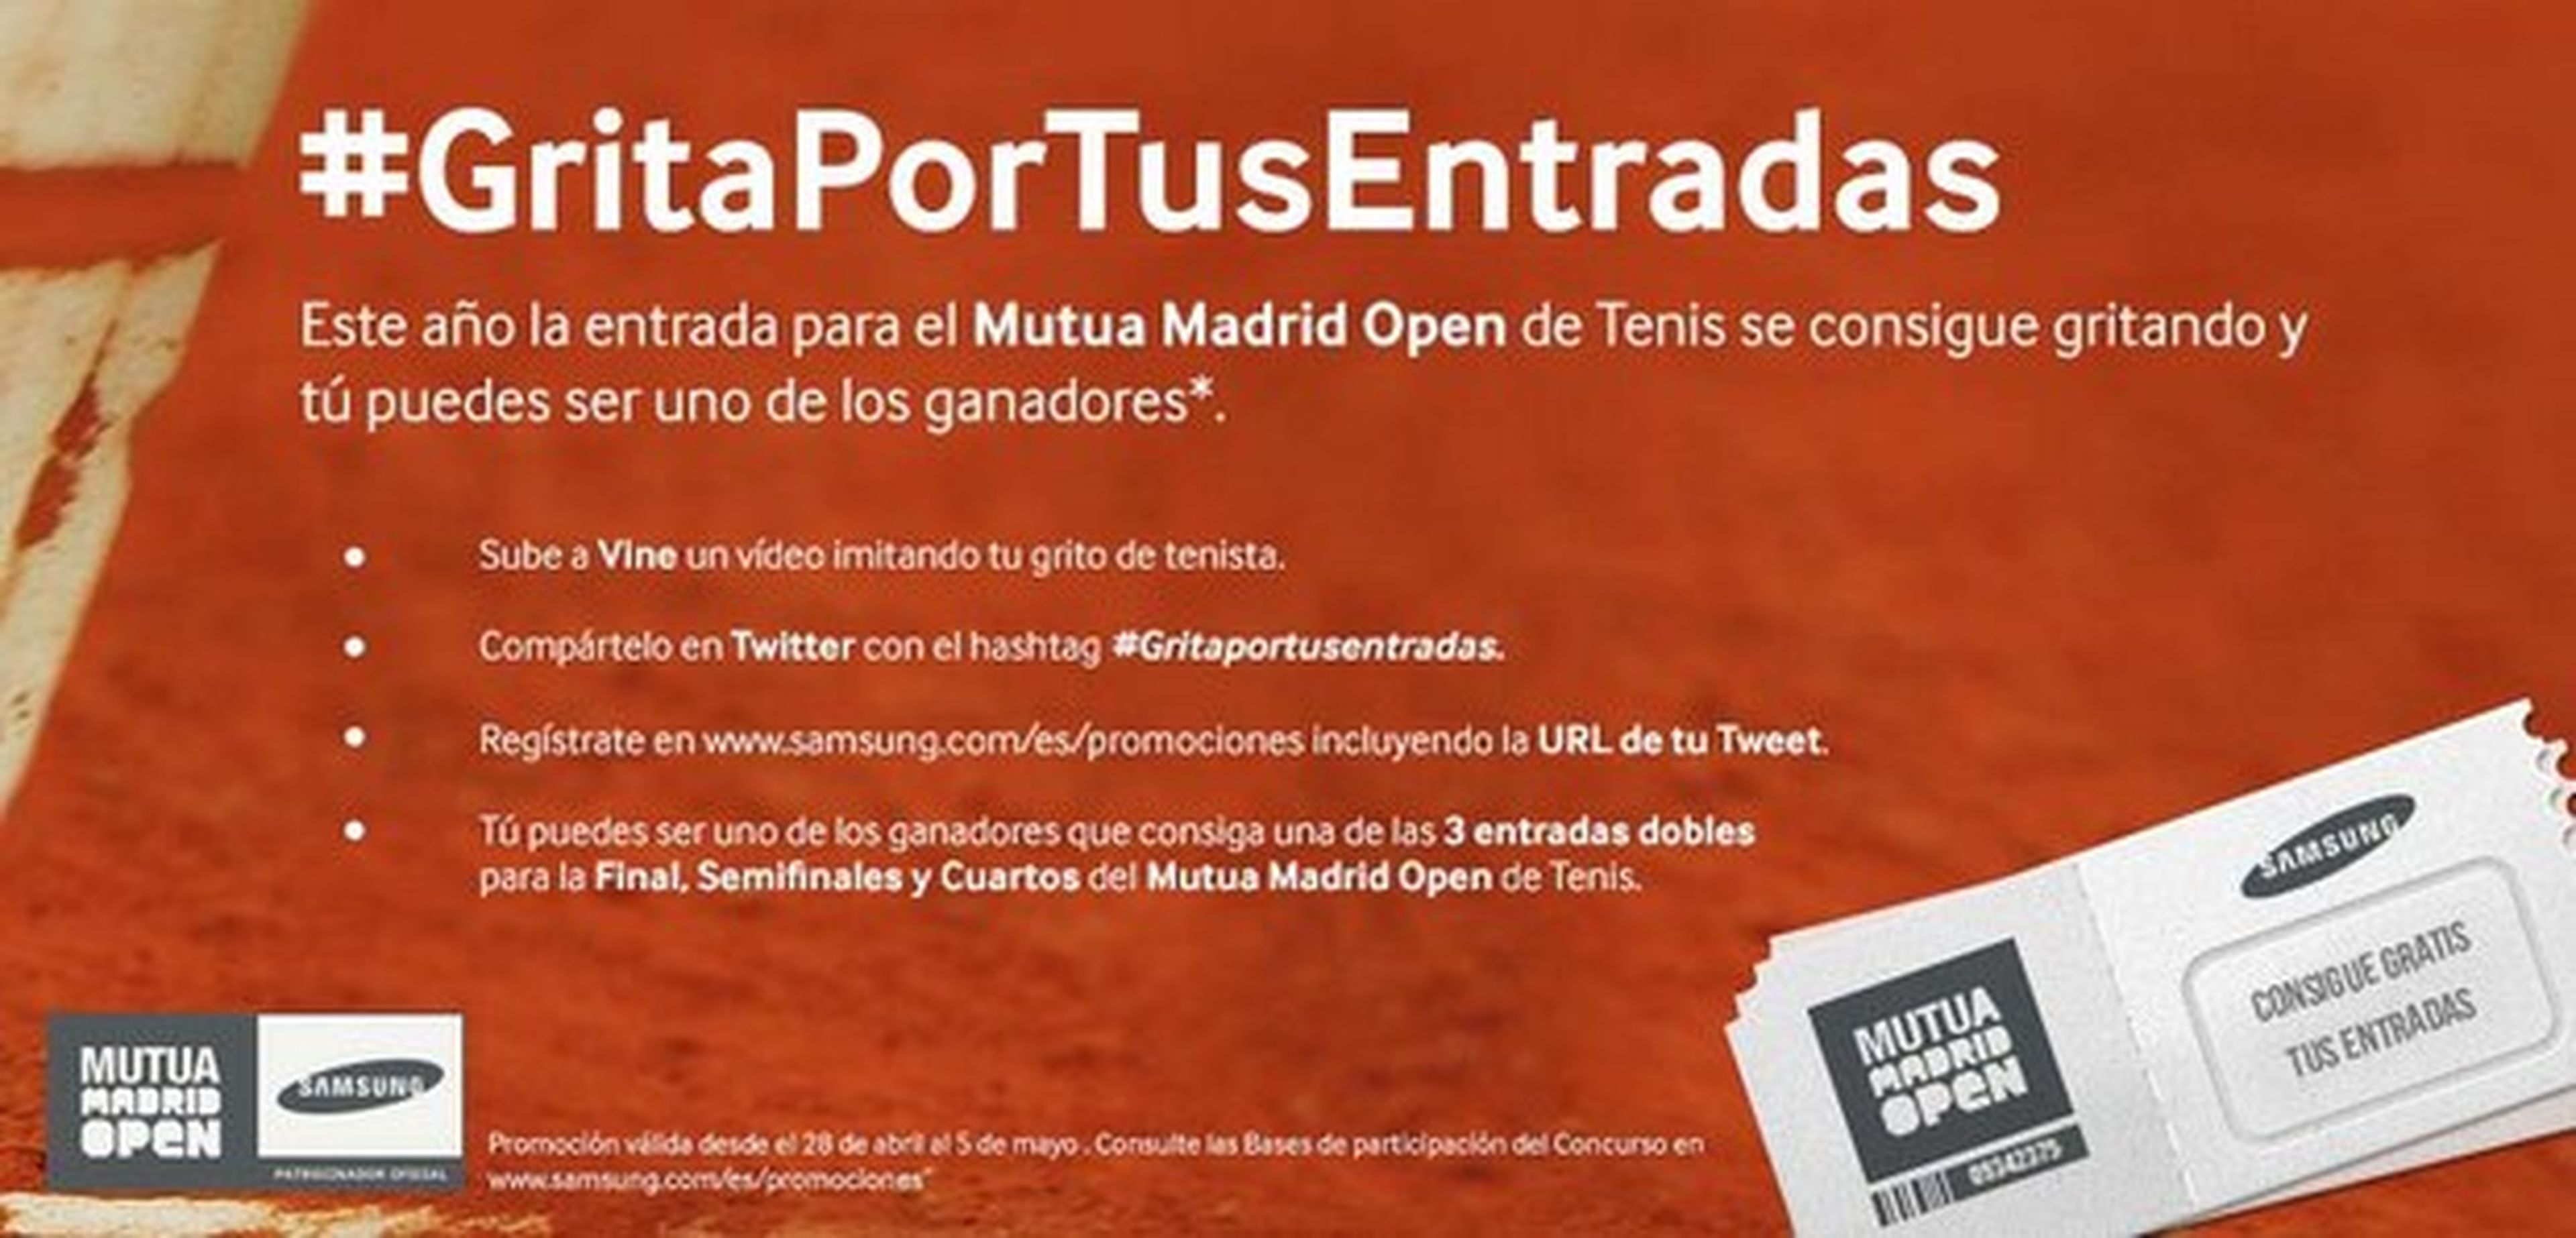 Entradas gratis de tenis para el Mutua Madrid Open, con Samsung